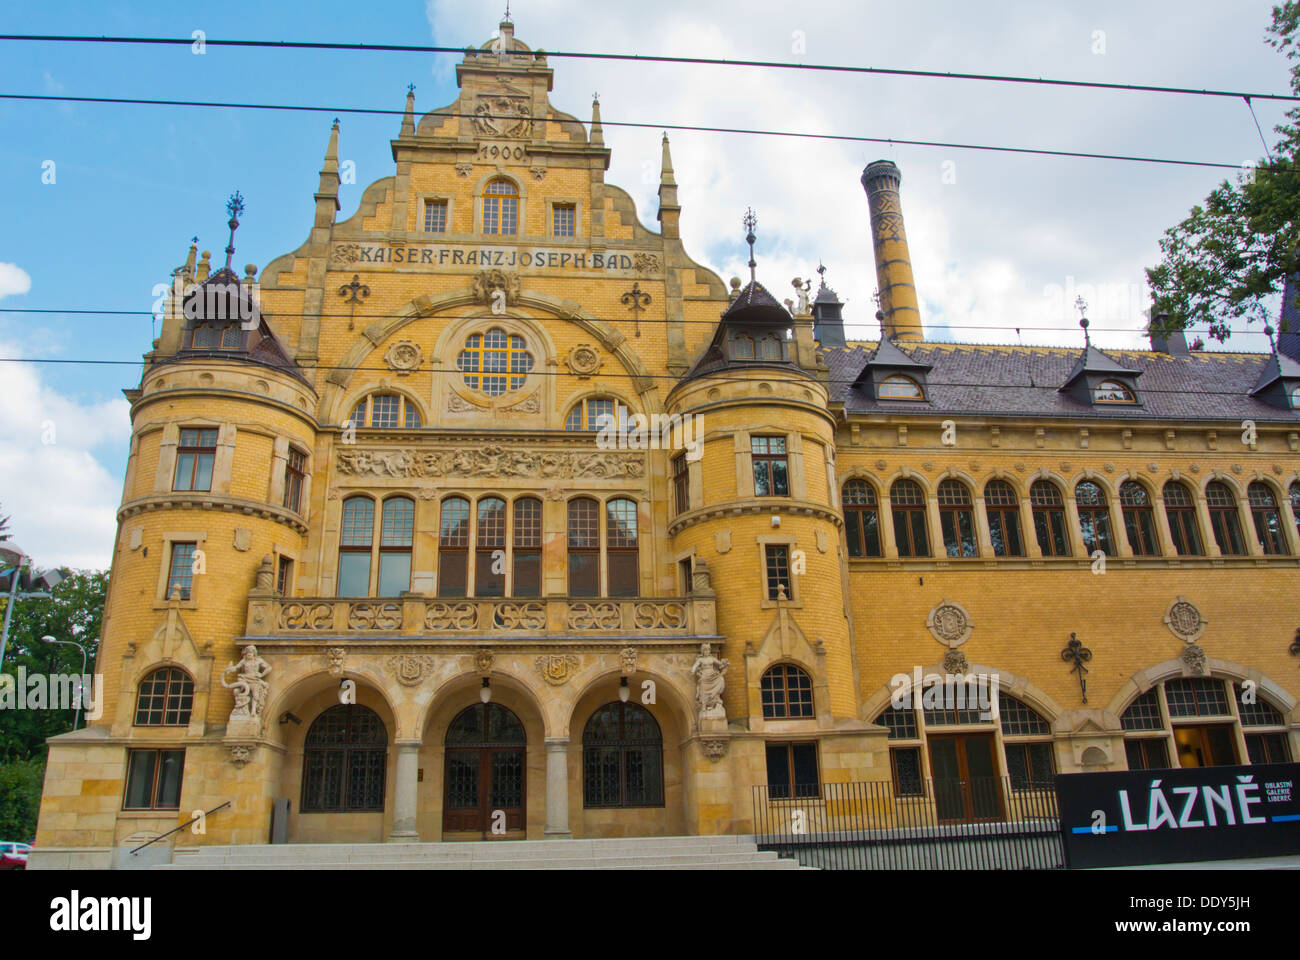 Franz Josephs mauvais la ville Spa (1902) logements maintenant Lazne regional art gallery la ville de Liberec en République Tchèque Banque D'Images